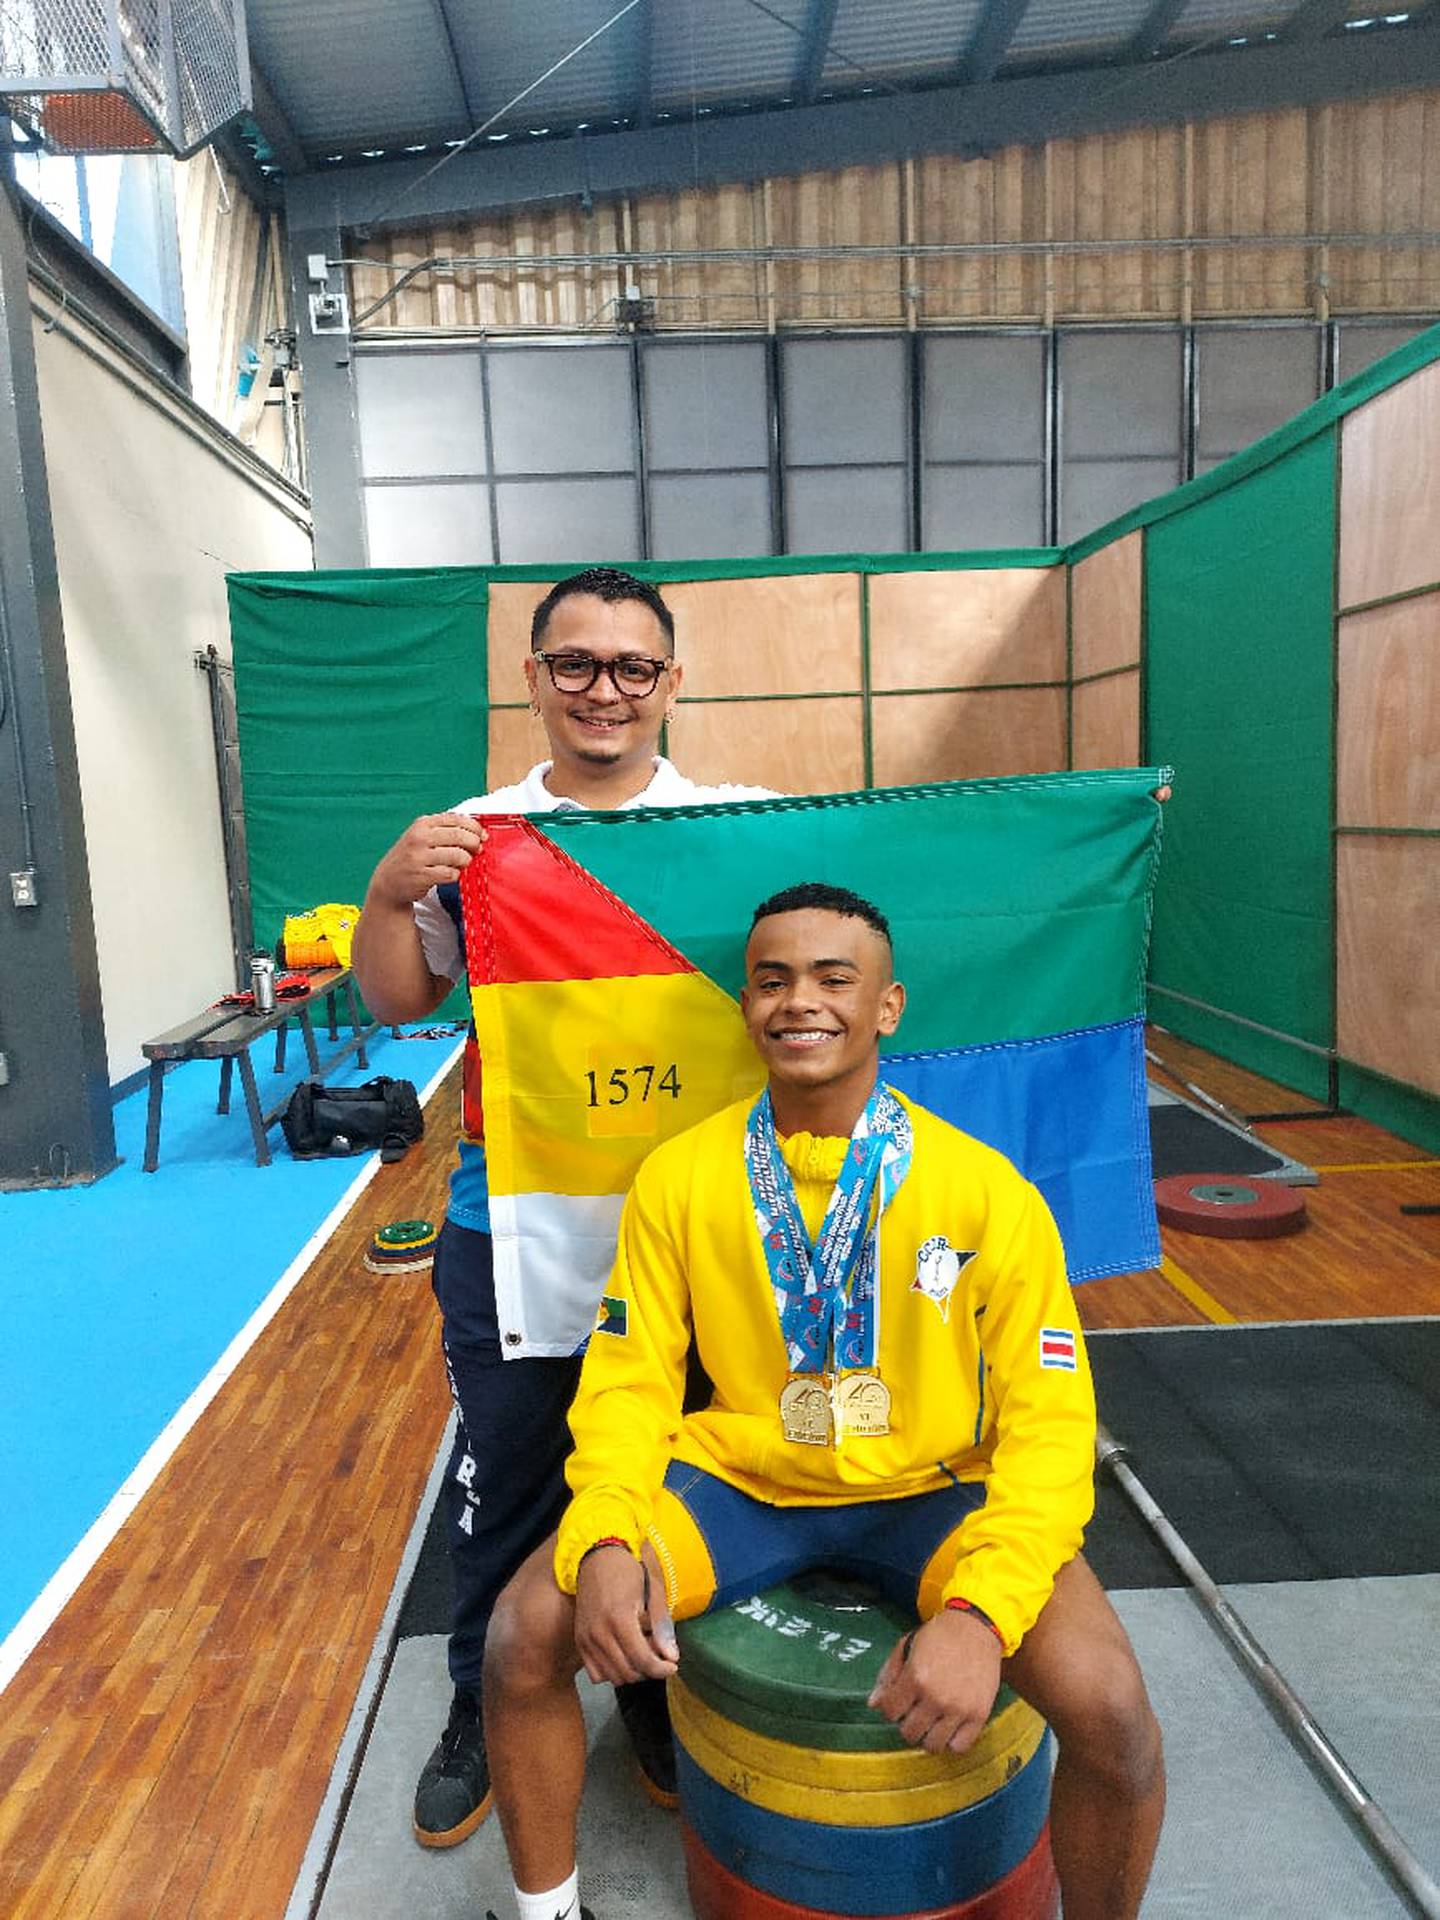 Jermain Duarte, de Esparza, abrió el medallero coronándose como el primer medallista de oro en la disciplina, tras consagrarse como campeón absoluto en su categoría de 55 kg, al llevarse el oro en arranque y envión con un total de 157 kg.